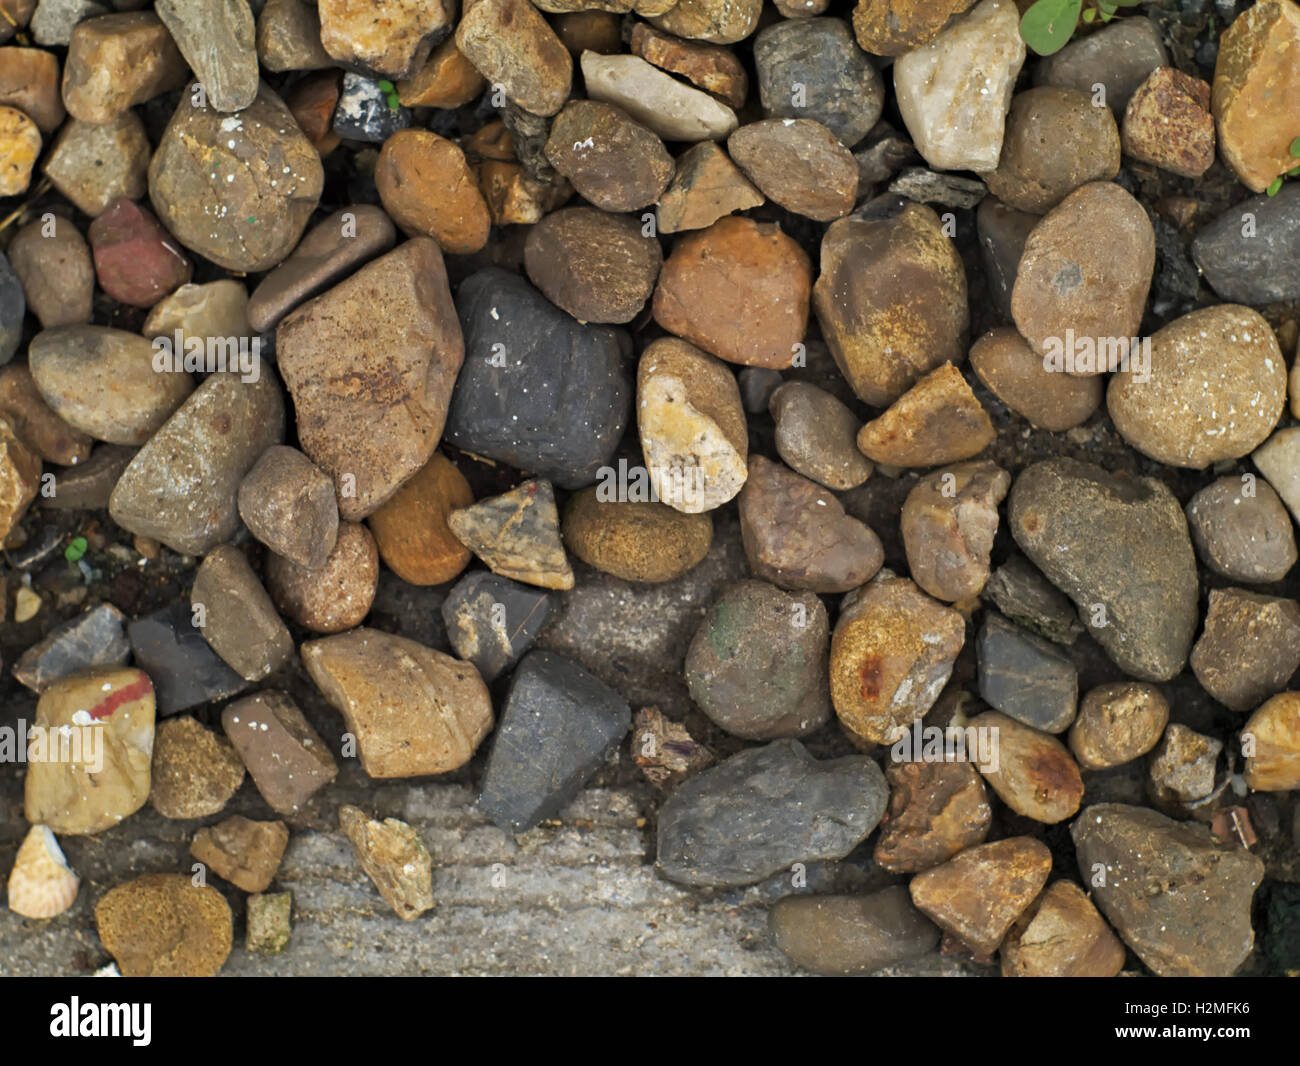 Closeup Schuss von einem Haufen von Steinen in verschiedenen Farben, Formen und Größen Stockfoto